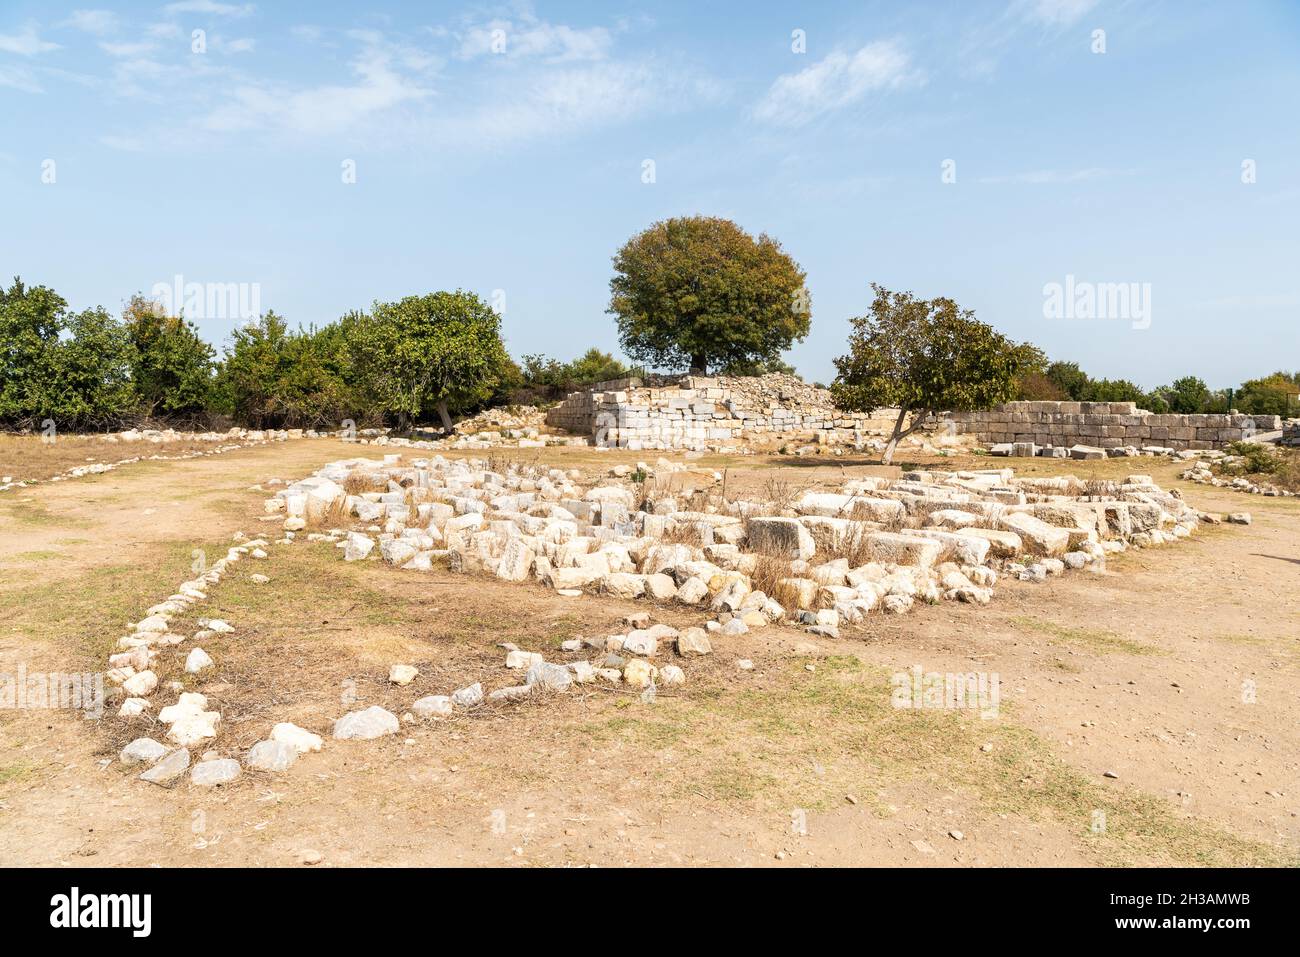 Ruines de l'ancienne ville grecque Teos dans la province d'Izmir en Turquie.Teos était une ancienne ville grecque sur la côte d'Ionia.Teos était un port florissant avec de l'humour Banque D'Images